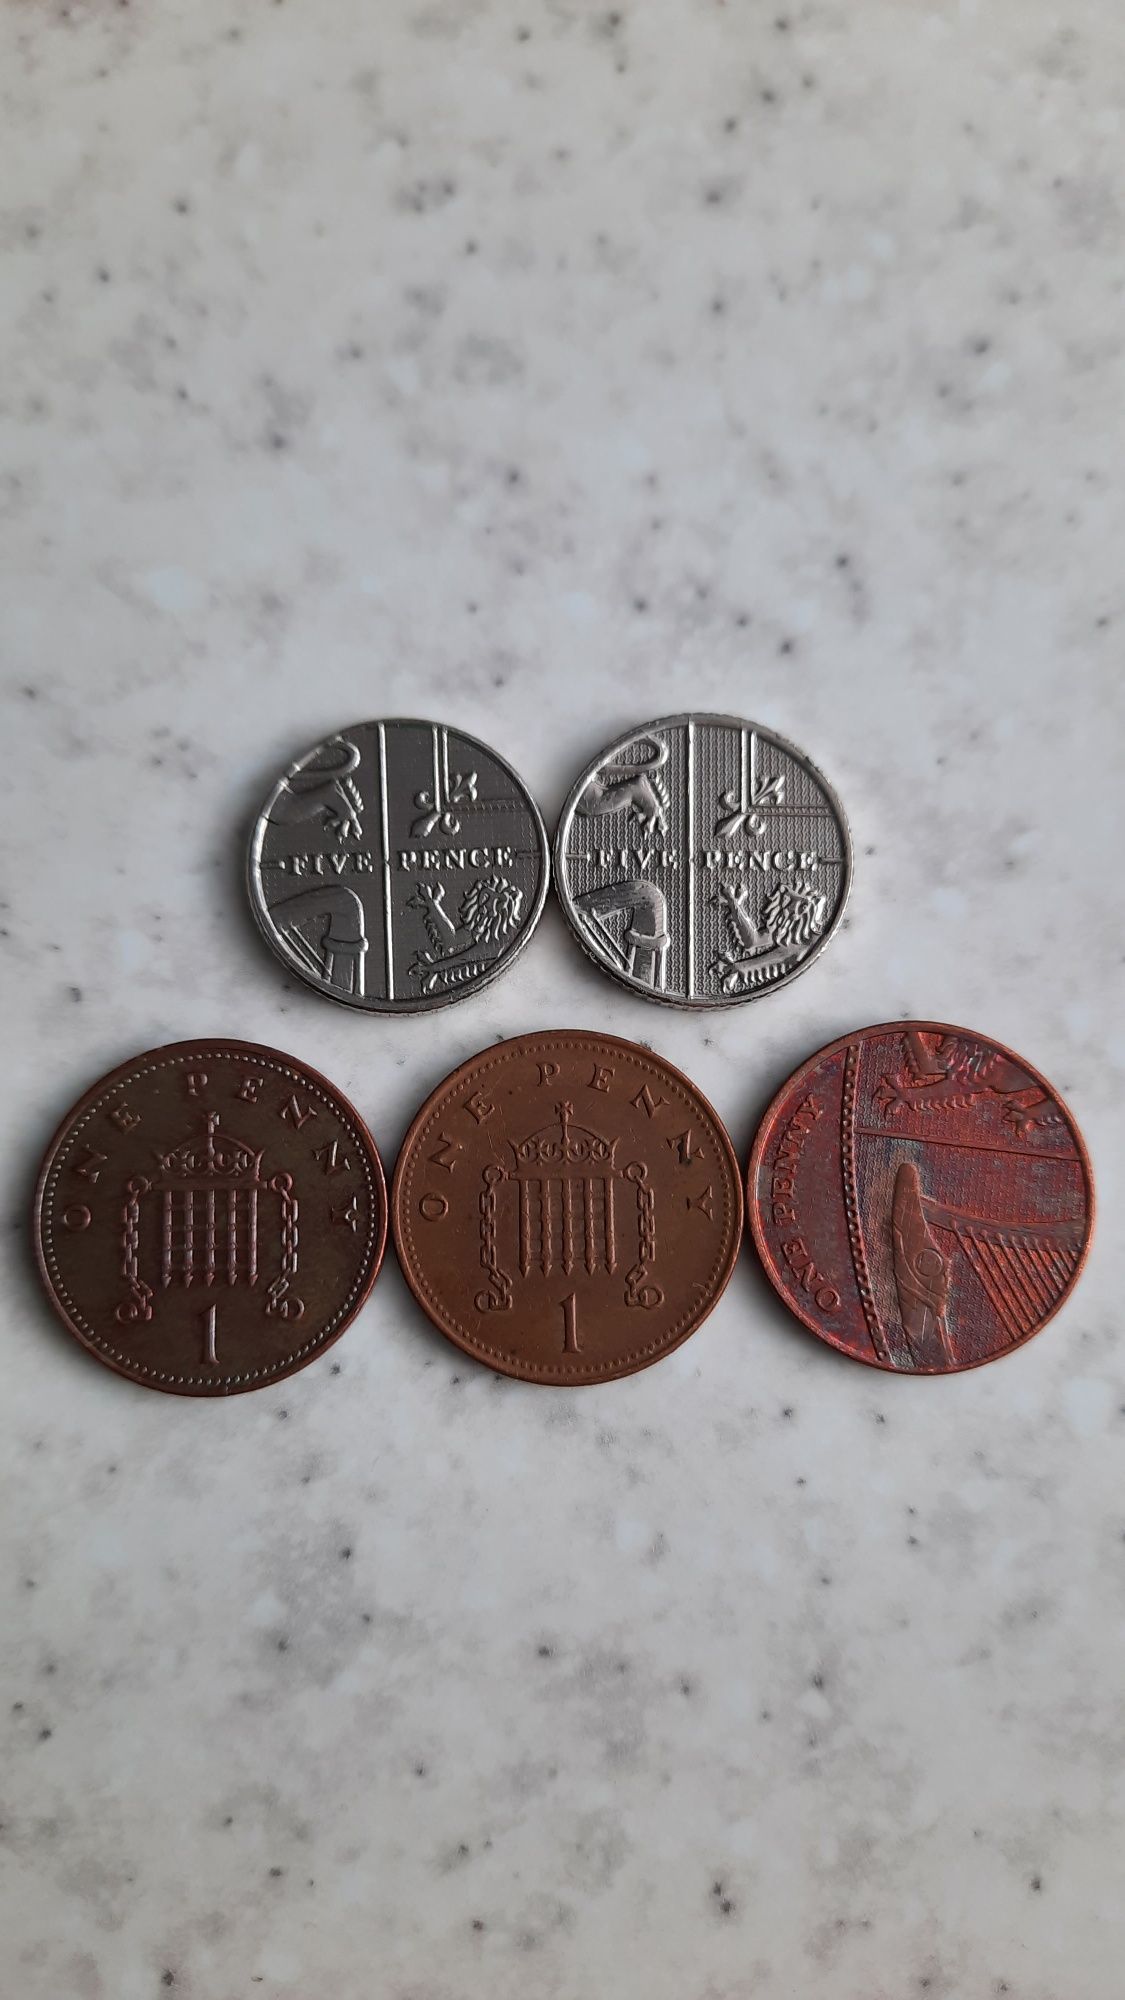 Monety kolekcjonerskie brytyjskie cena za5szt.